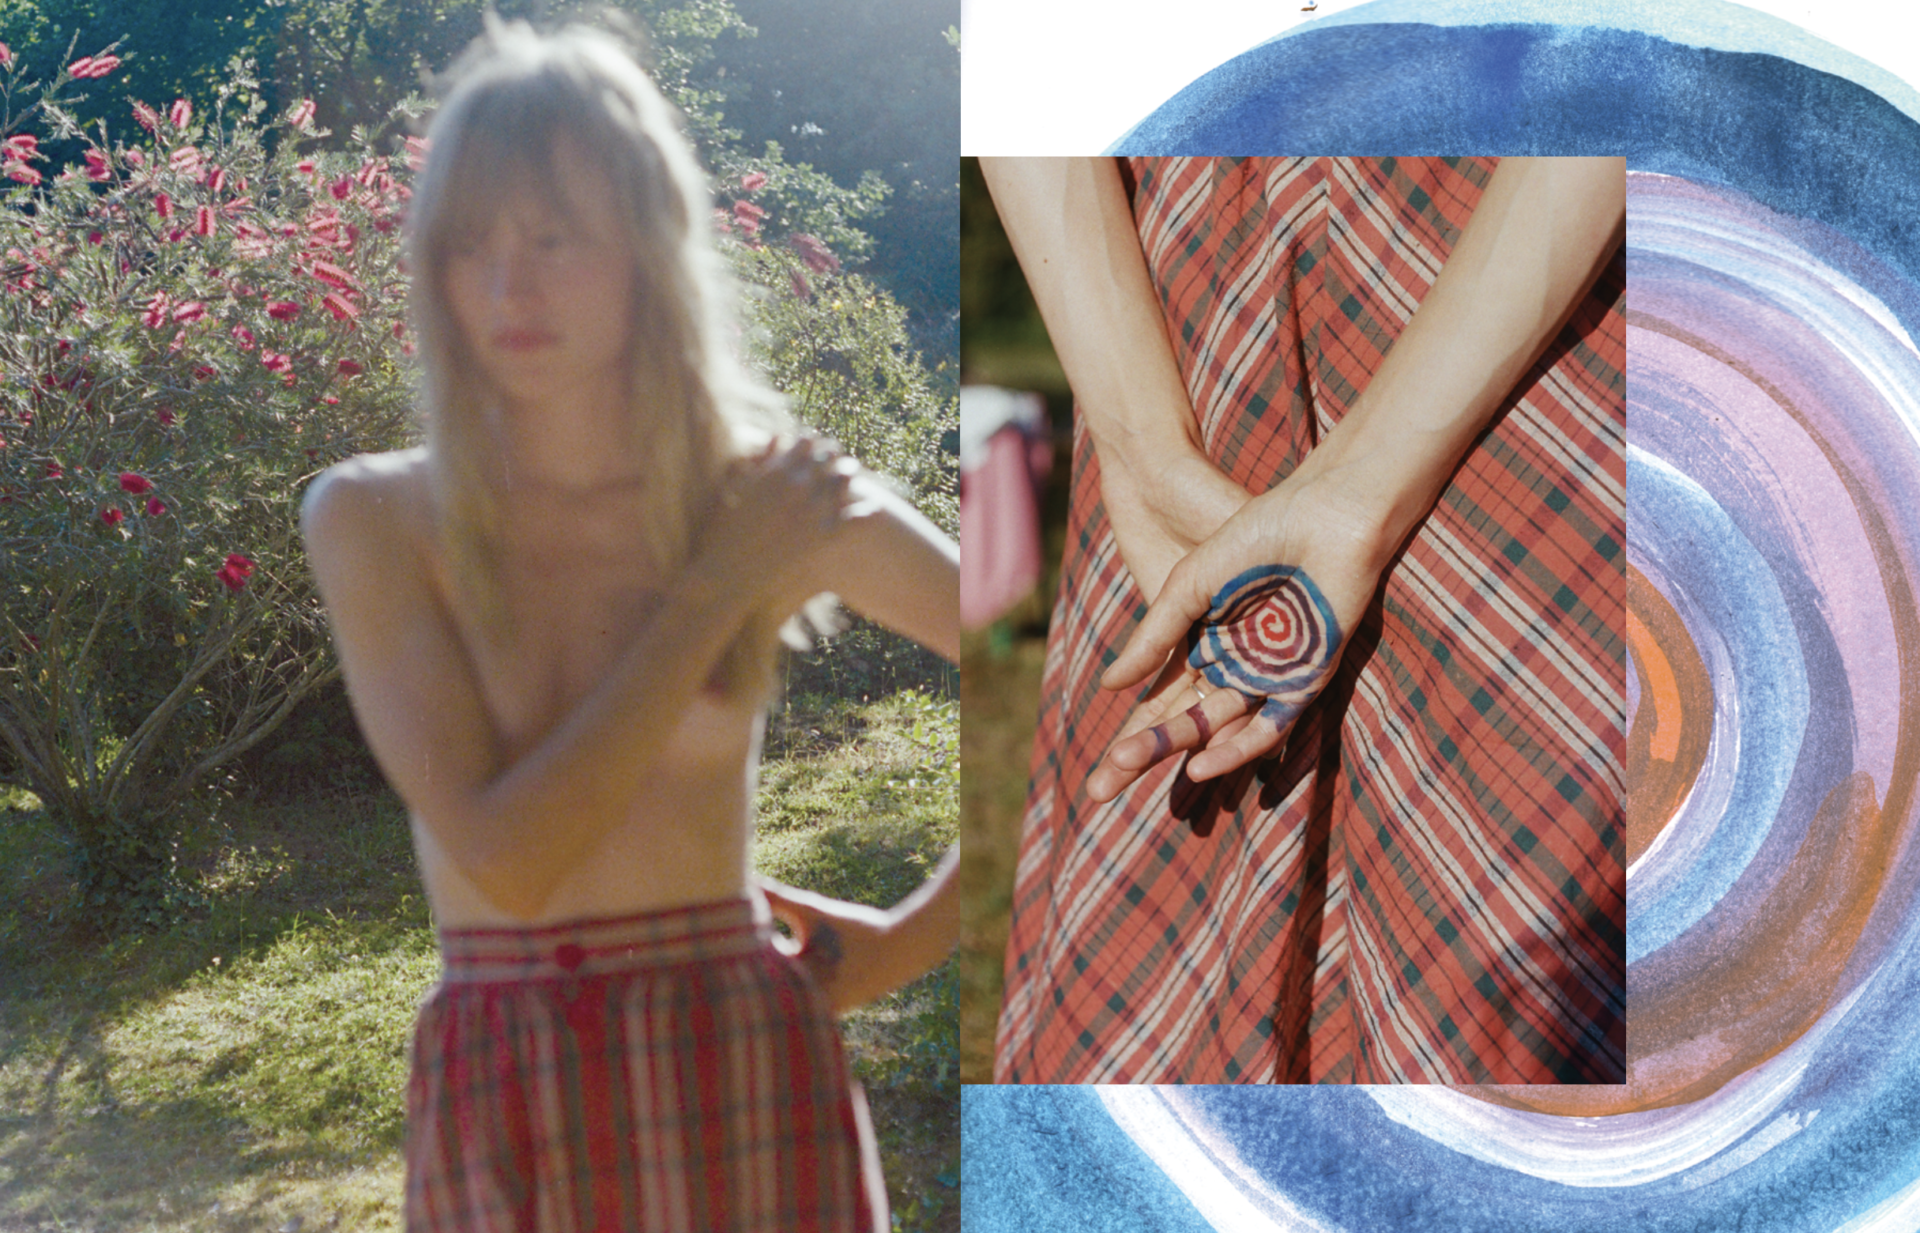 Assemblage d'une photo de femme en jupe écossaise, tenant un caillou peint sur un dessin de cercles bleu